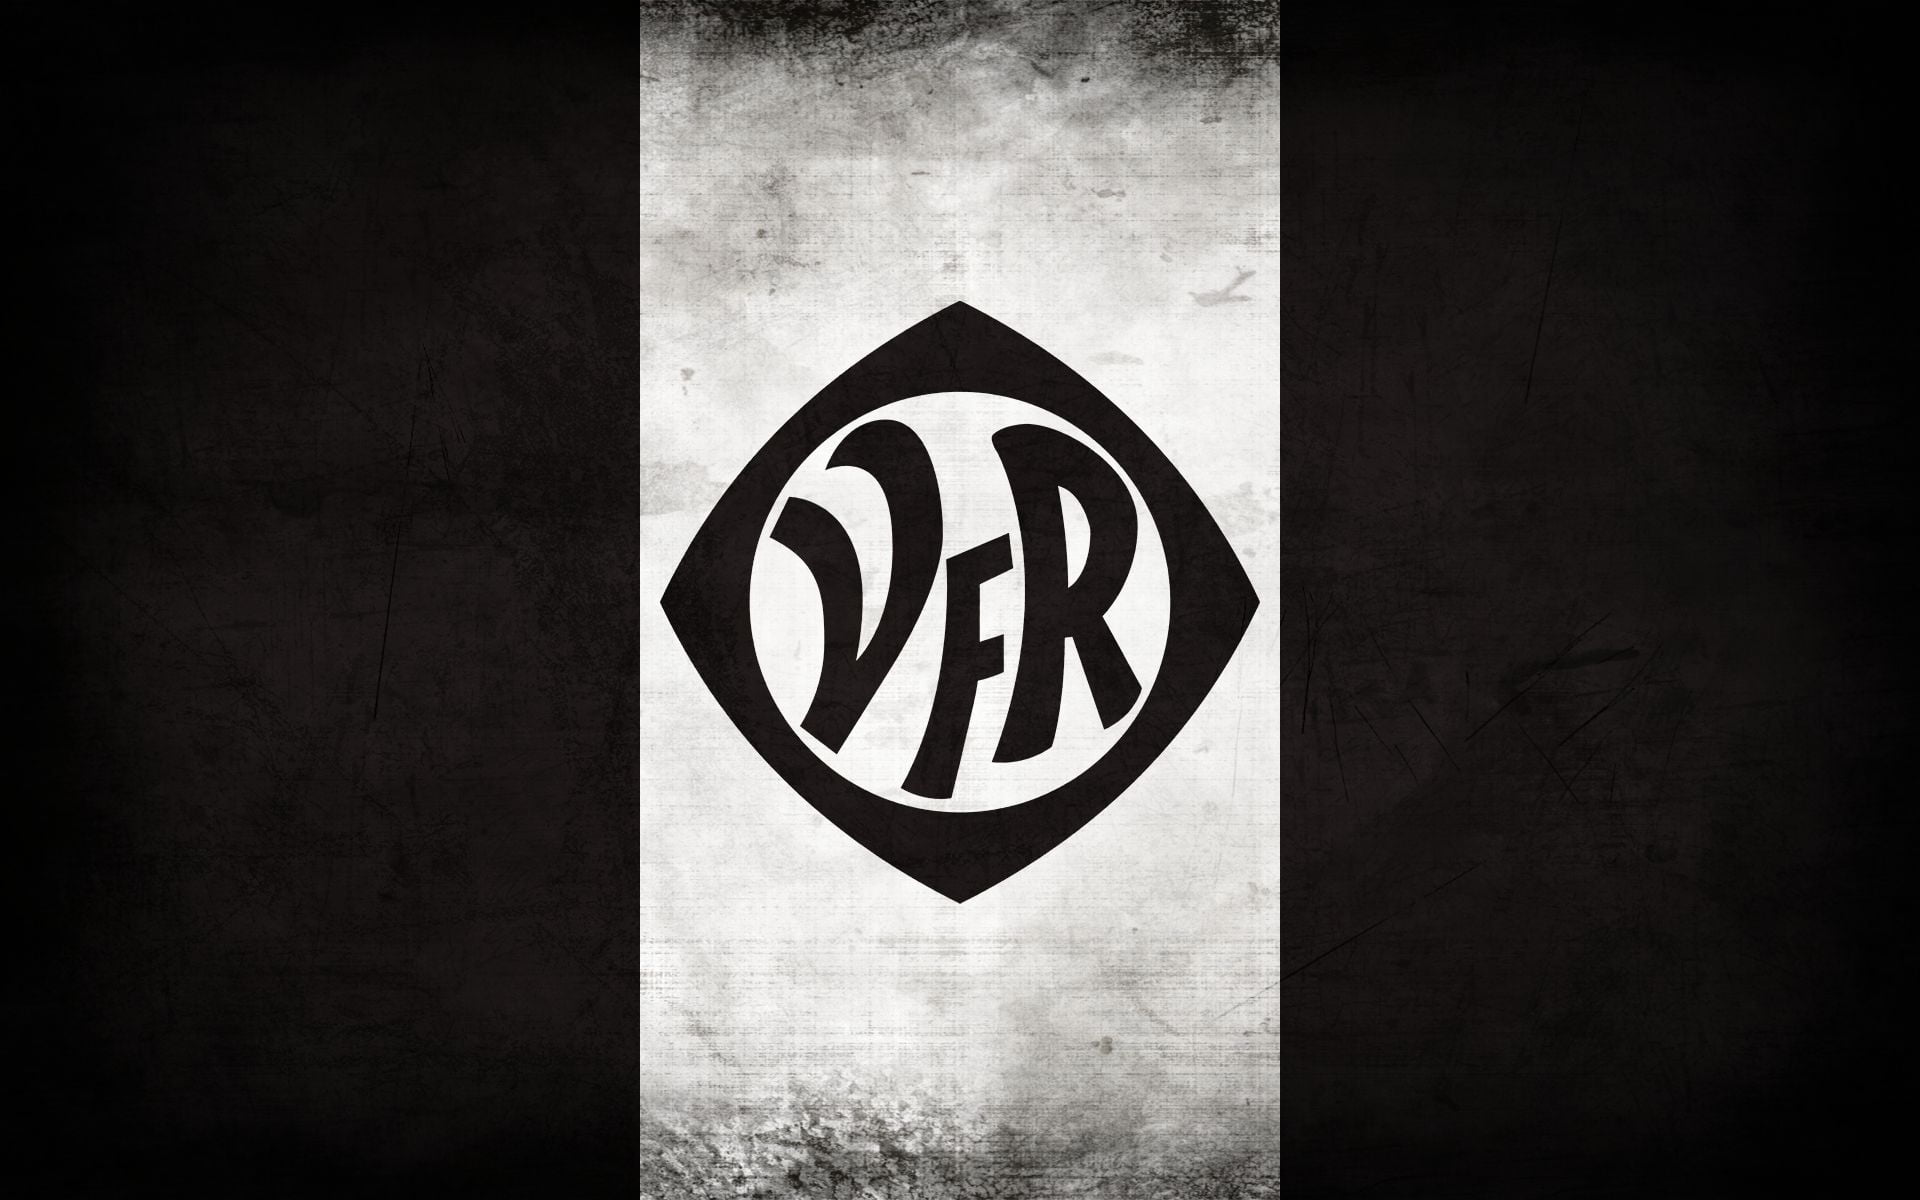 Soccer, VfR Aalen, Emblem, Logo